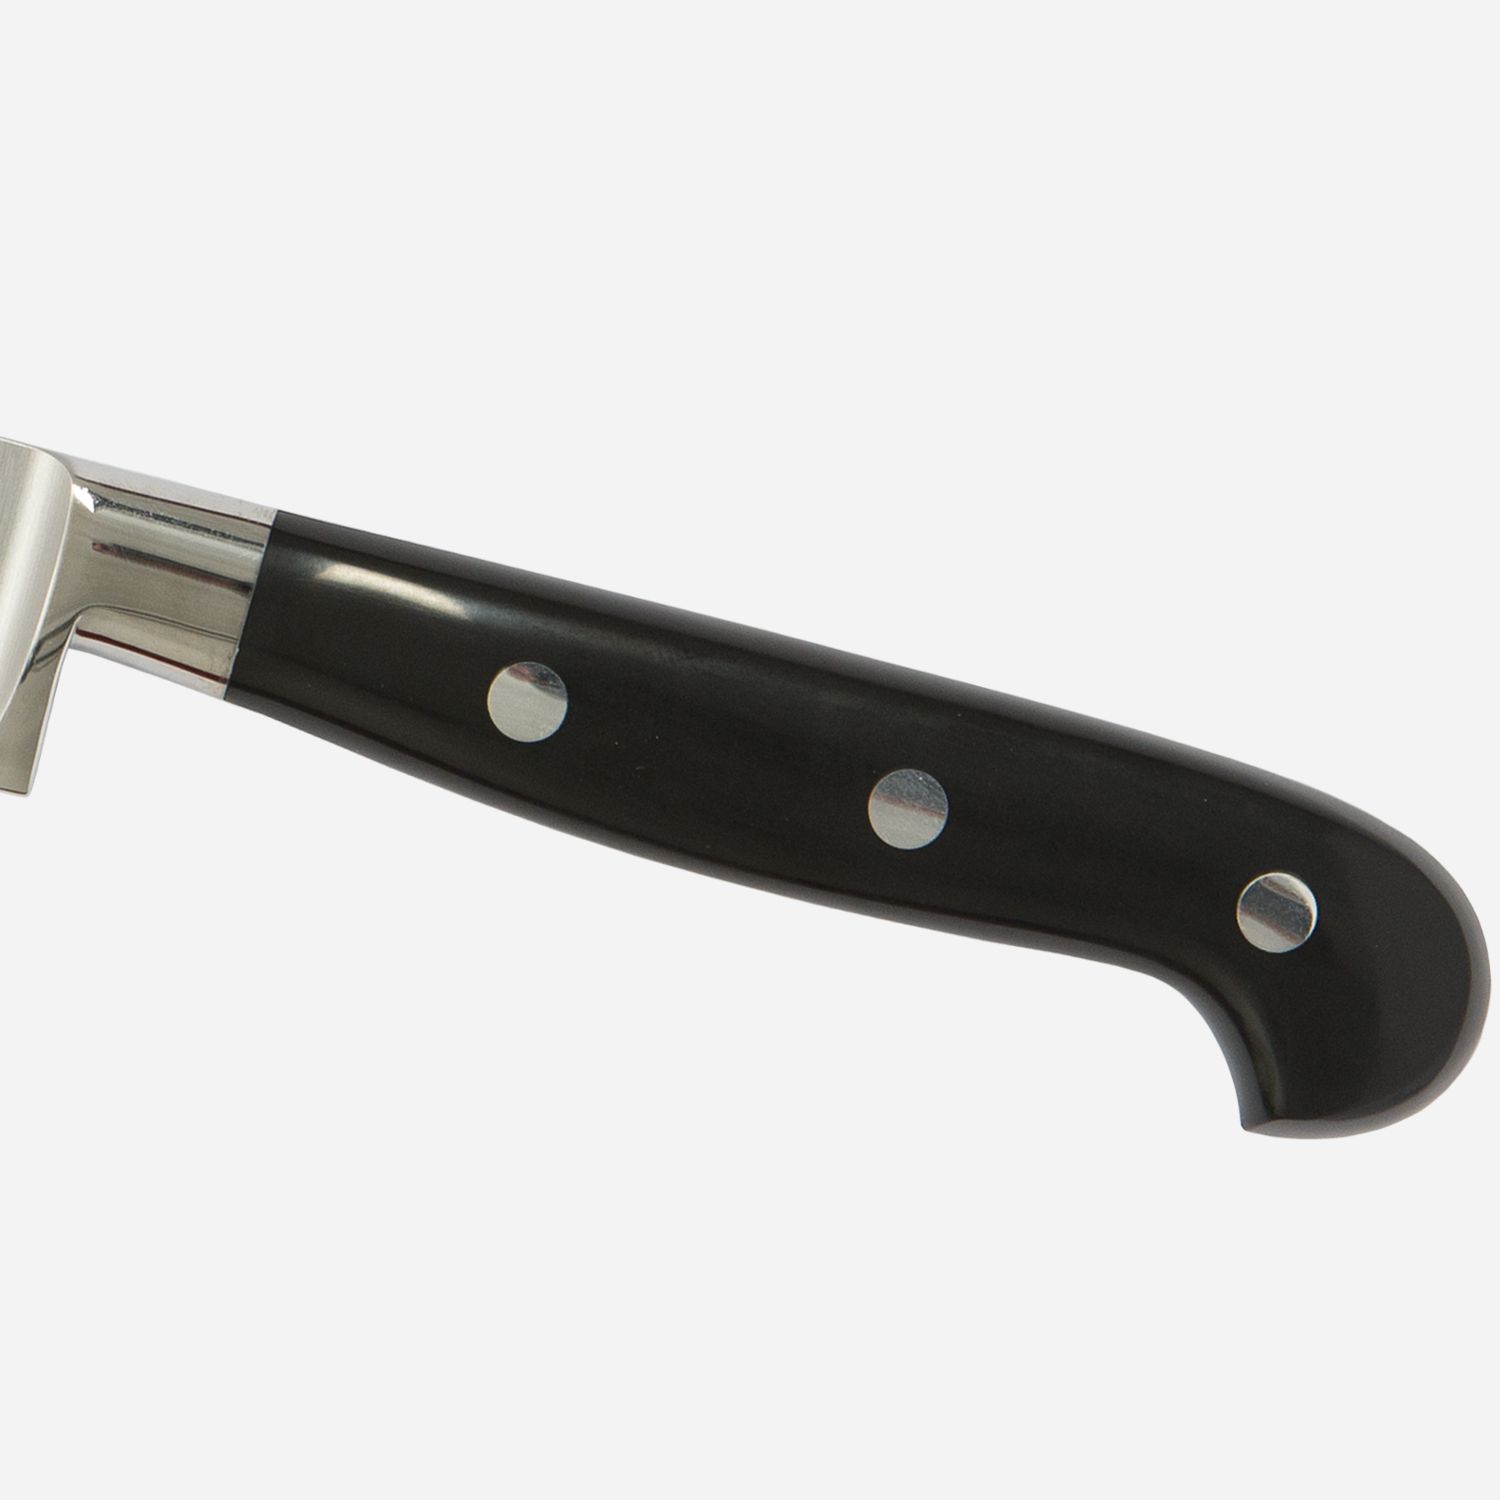 Utility knife cm.12  Stainless Steel Berkel Adhoc Handle Glossy Black Resin